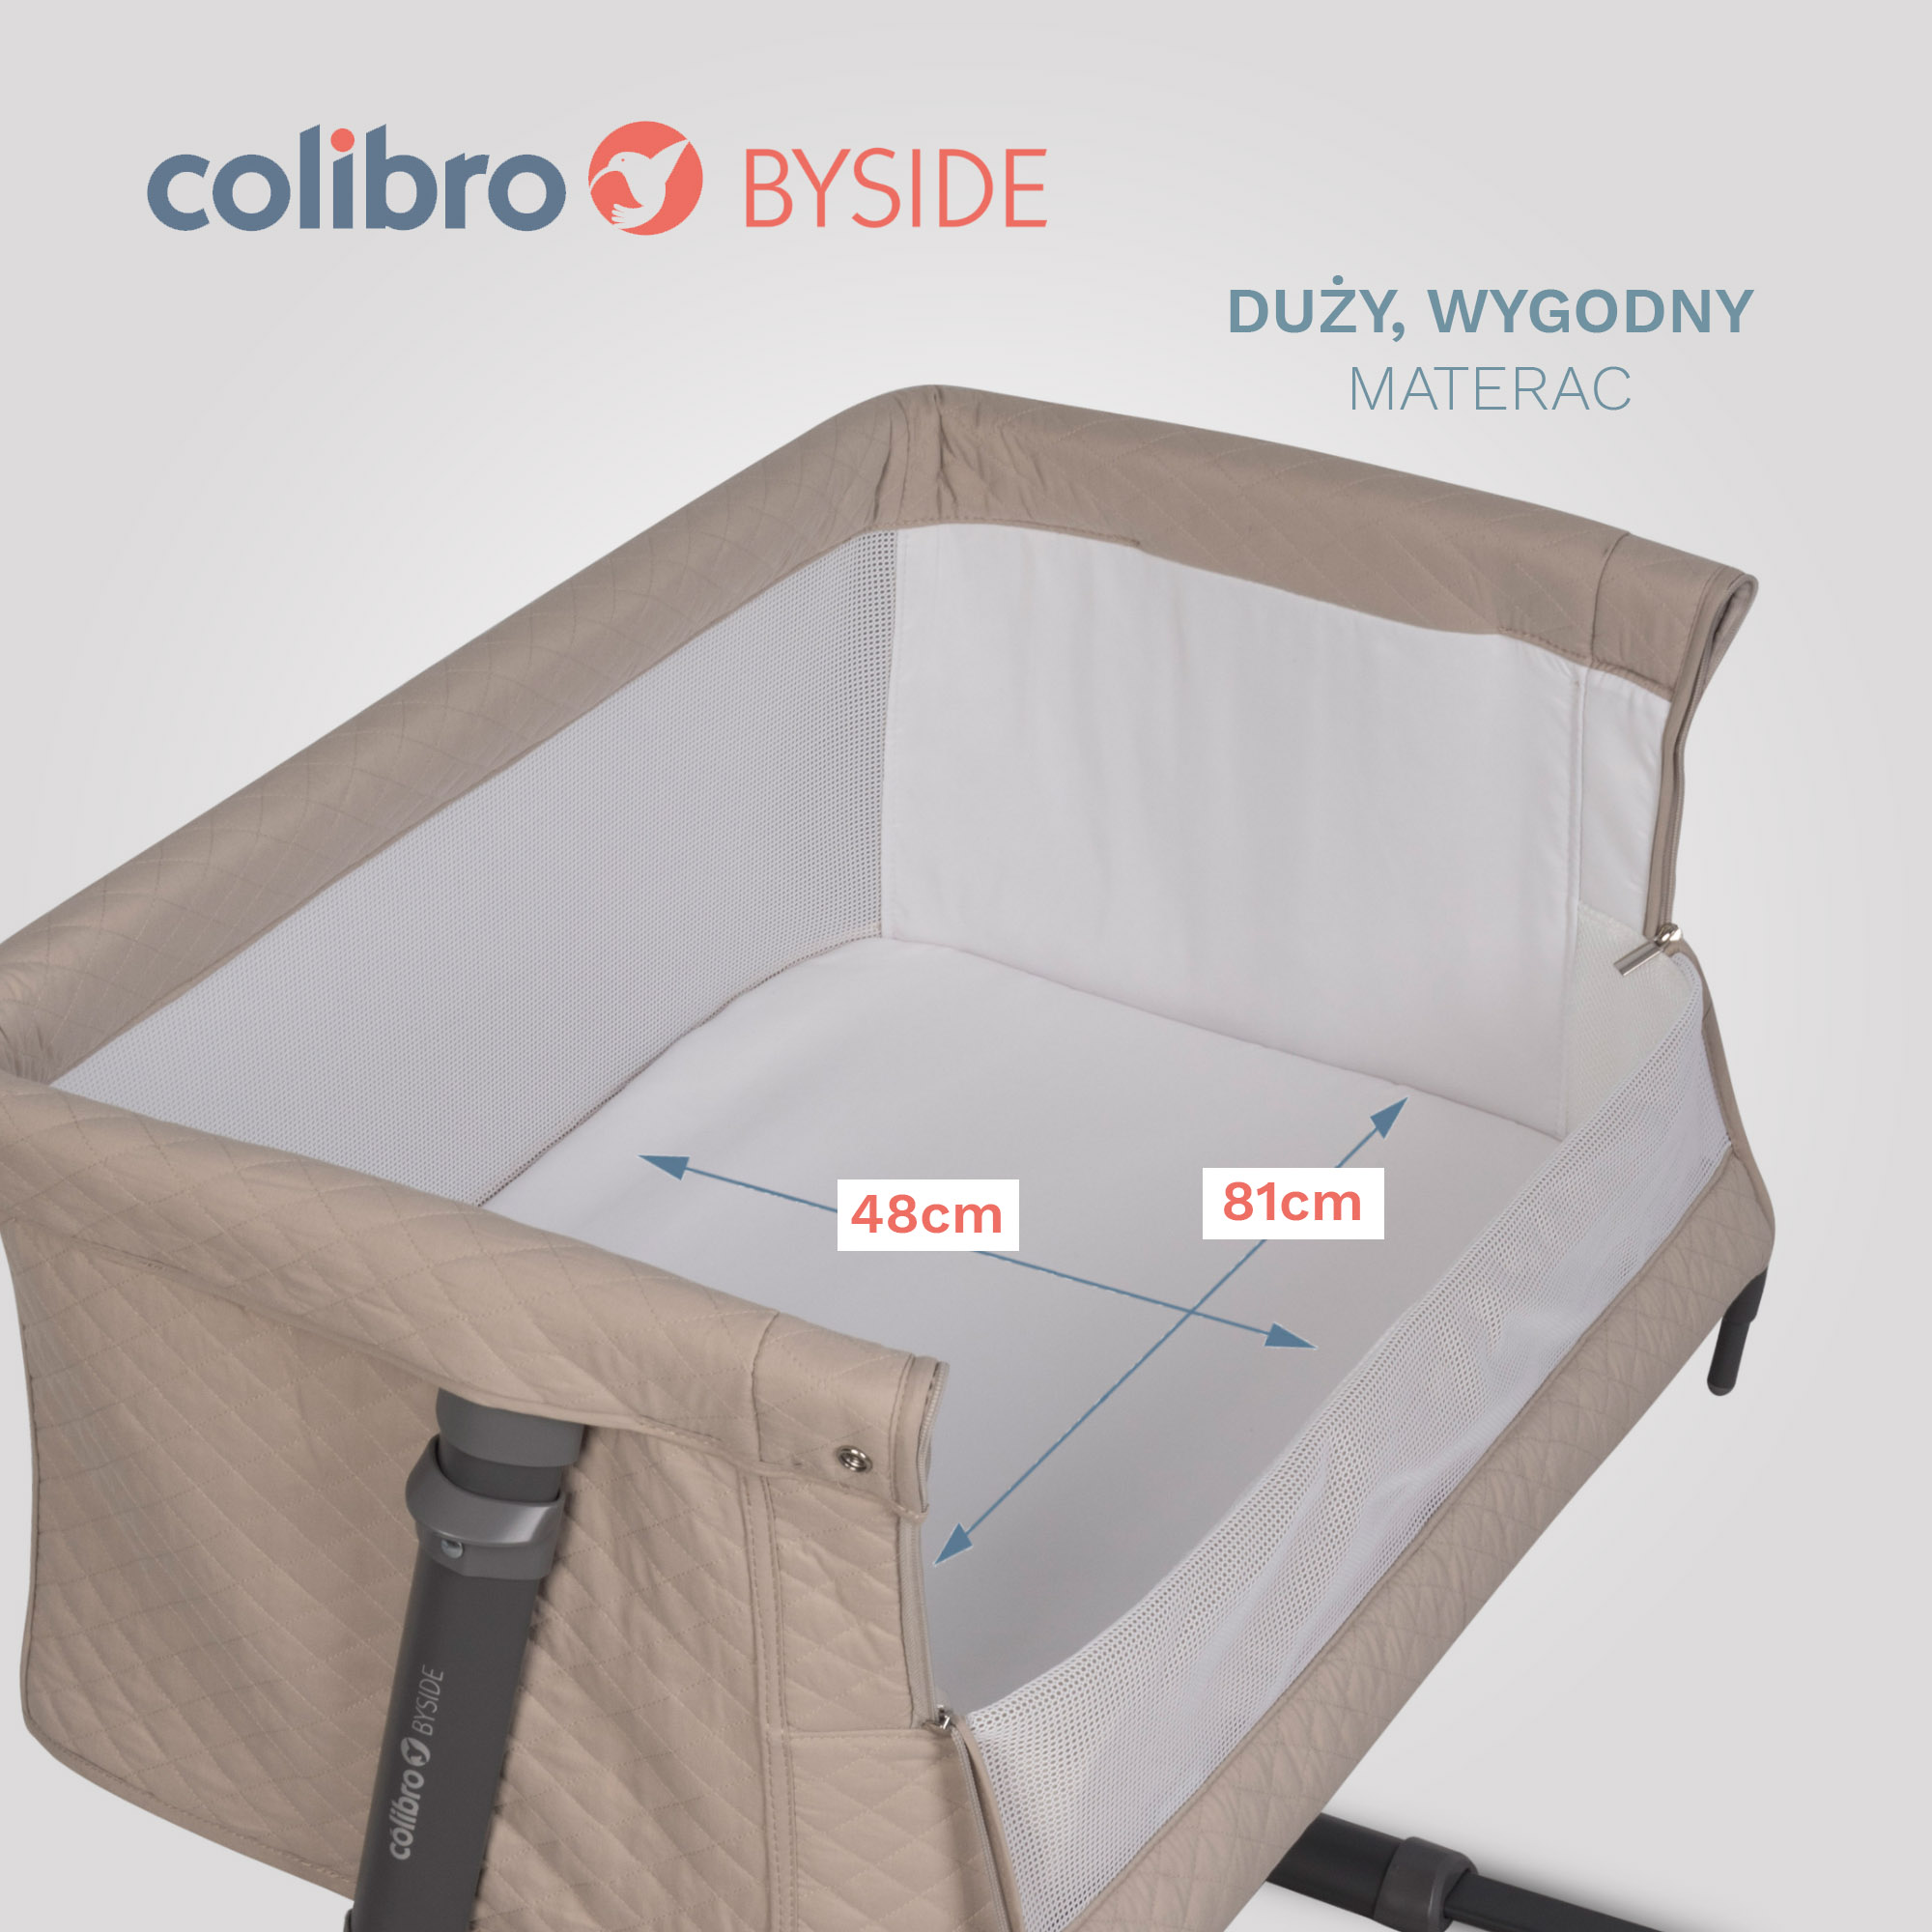 Łóżeczko dostawne dla dzieci Colibro Byside - dostawka do łóżka